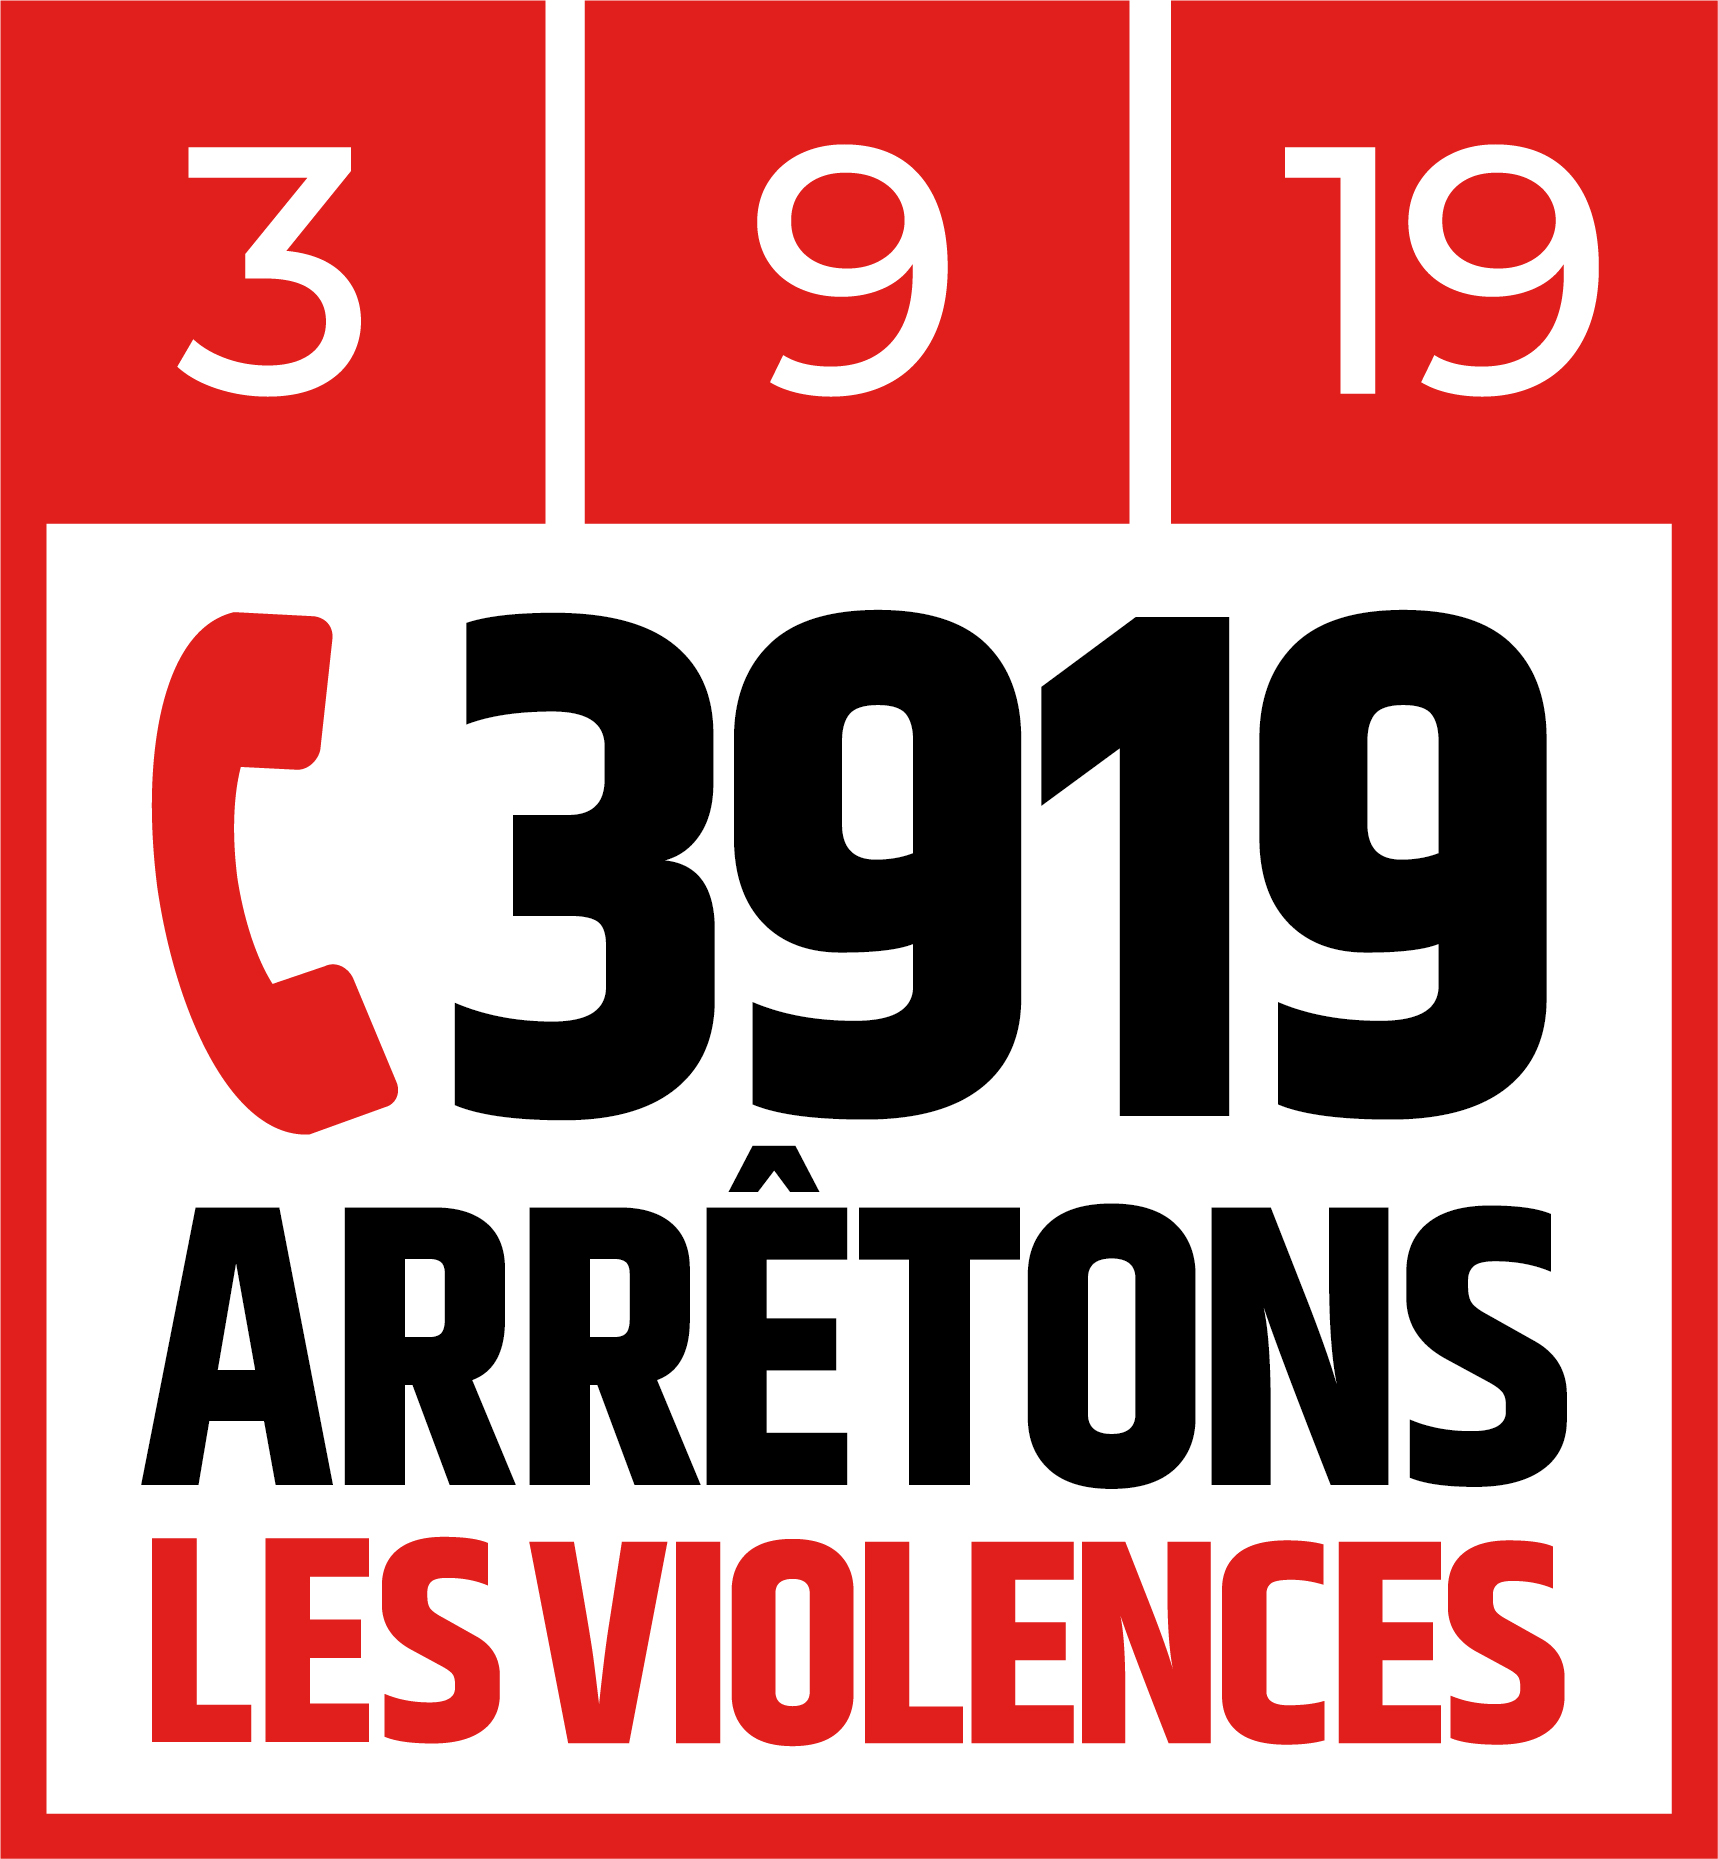 3919 arretons les violences - Neuilly-sur-Marne